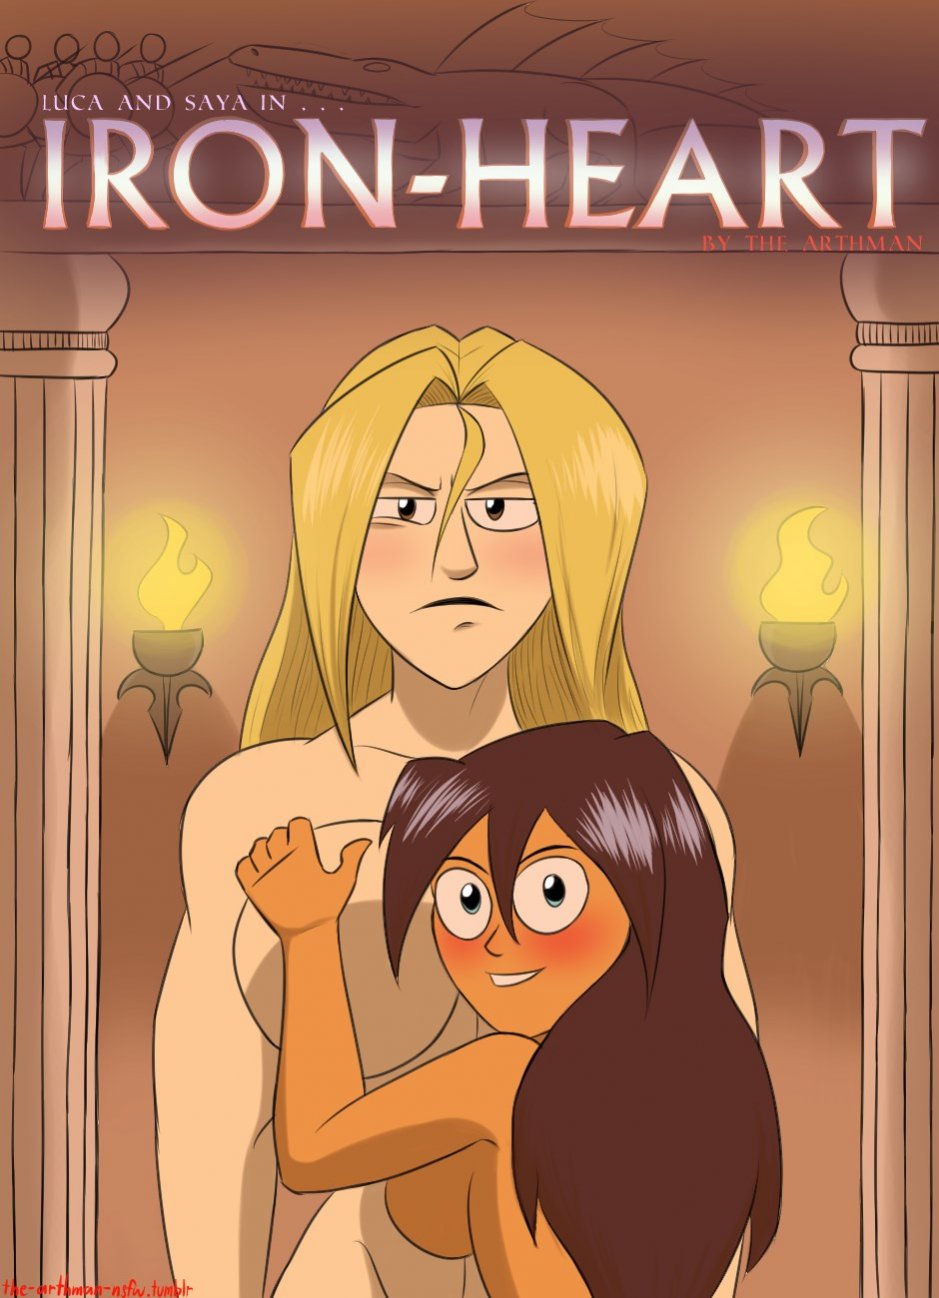 Iron-Heart